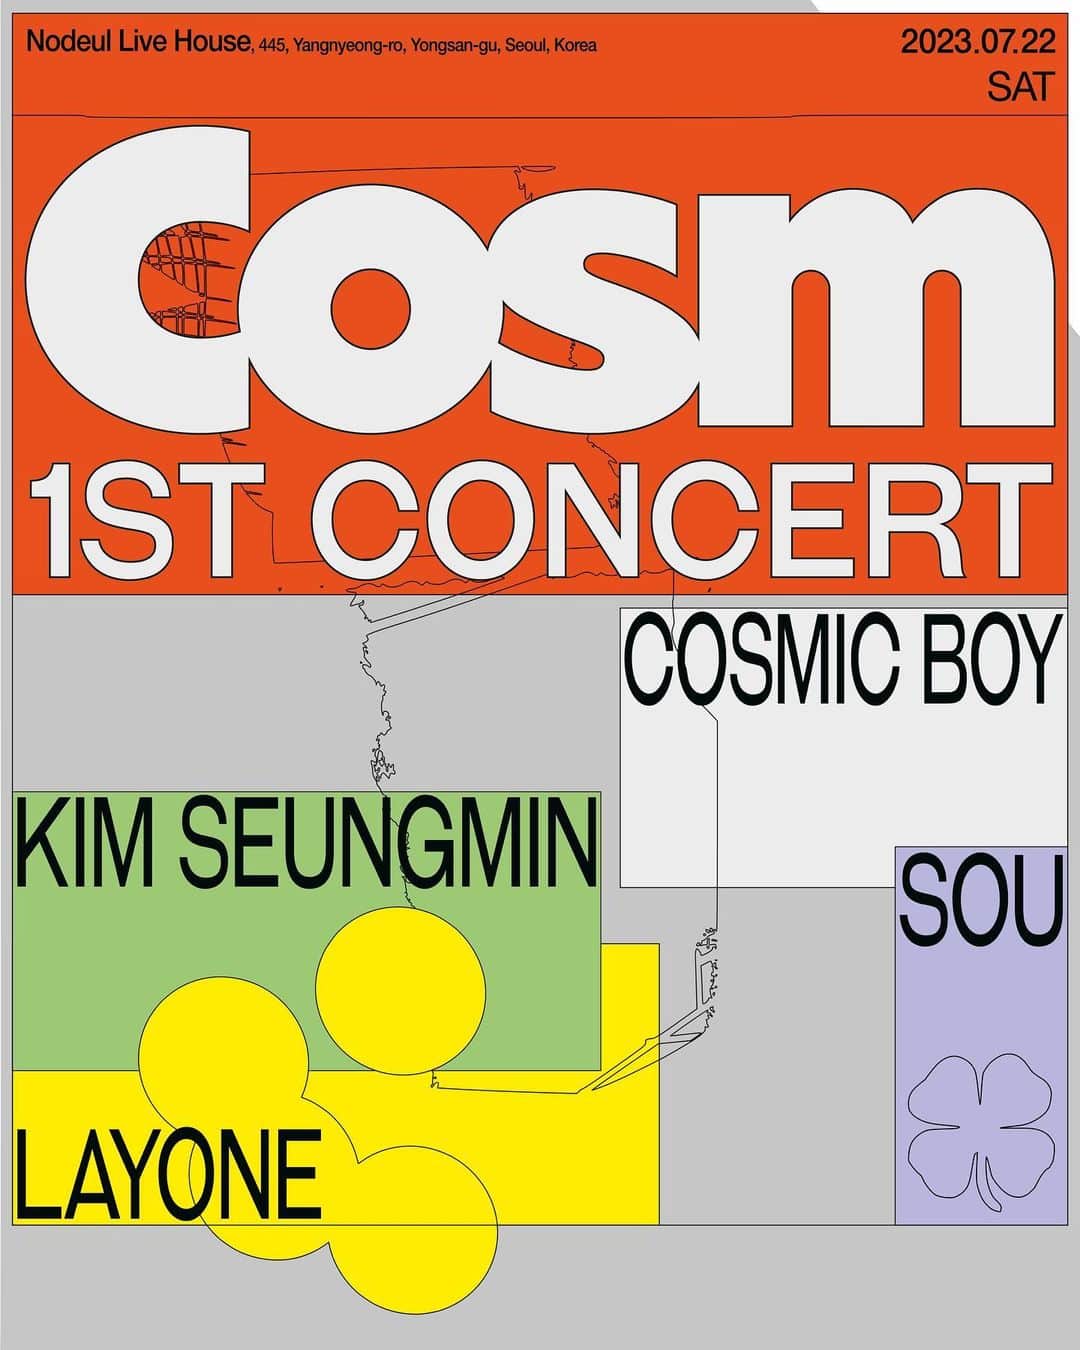 キム・スンミンのインスタグラム：「[Cosm]  Cosm 1st Concert  1주년을 맞이한 코즘의 1번째 단체 콘서트에 여러분을 초대합니다.  ✔ Concert Info. 공연일시 : 2023.07.22 (토) 오후 6시 공연장소 : 노들섬 라이브하우스 관람등급 : 12세 이상 관람시간 : 약 100분 좌석 : 1층 스탠딩, 2층 지정좌석 라인업 : 코스믹보이, 김승민, 래원, 장지수 with Special Guests 💥  🎫 Ticket Open 티켓오픈일 : 2023.06.29 (목) 오후 8시 티켓가격 : 전석 77,000원 (1인 4매 제한) 예매처 : 멜론티켓 (단독 판매)  #코스믹보이 #CosmicBoy @cosmicboy__ #김승민 #KimSeungmin @superstarjimmyfuckedup #래원 #Layone @layon_e #장지수 #Sou #JangJisou @jangjisou #코즘 #Cosm #Cosm1stConcert」